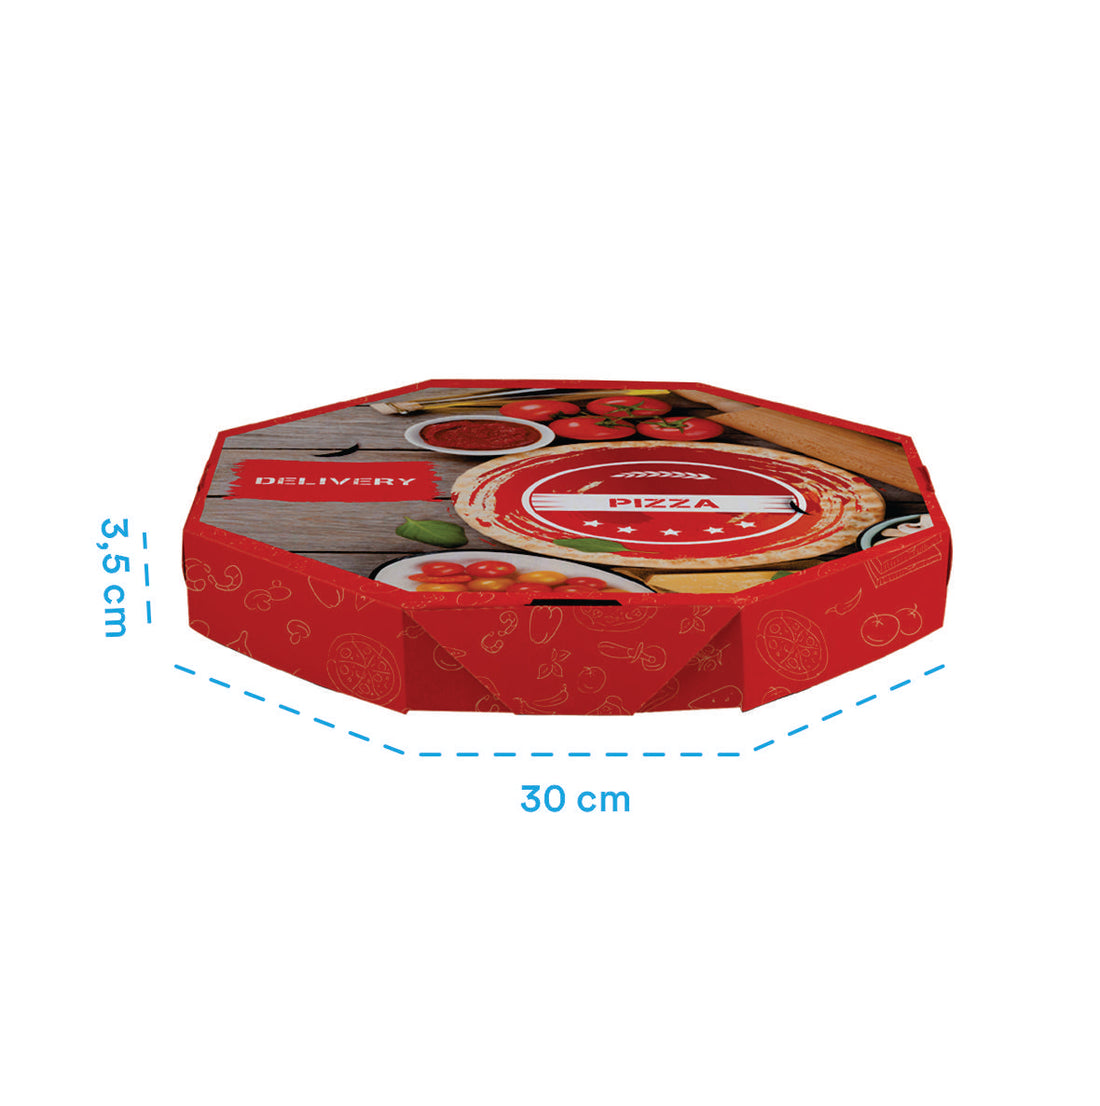 Caixa de Pizza Italianinha com Fundo Branco Octagonal 30cm